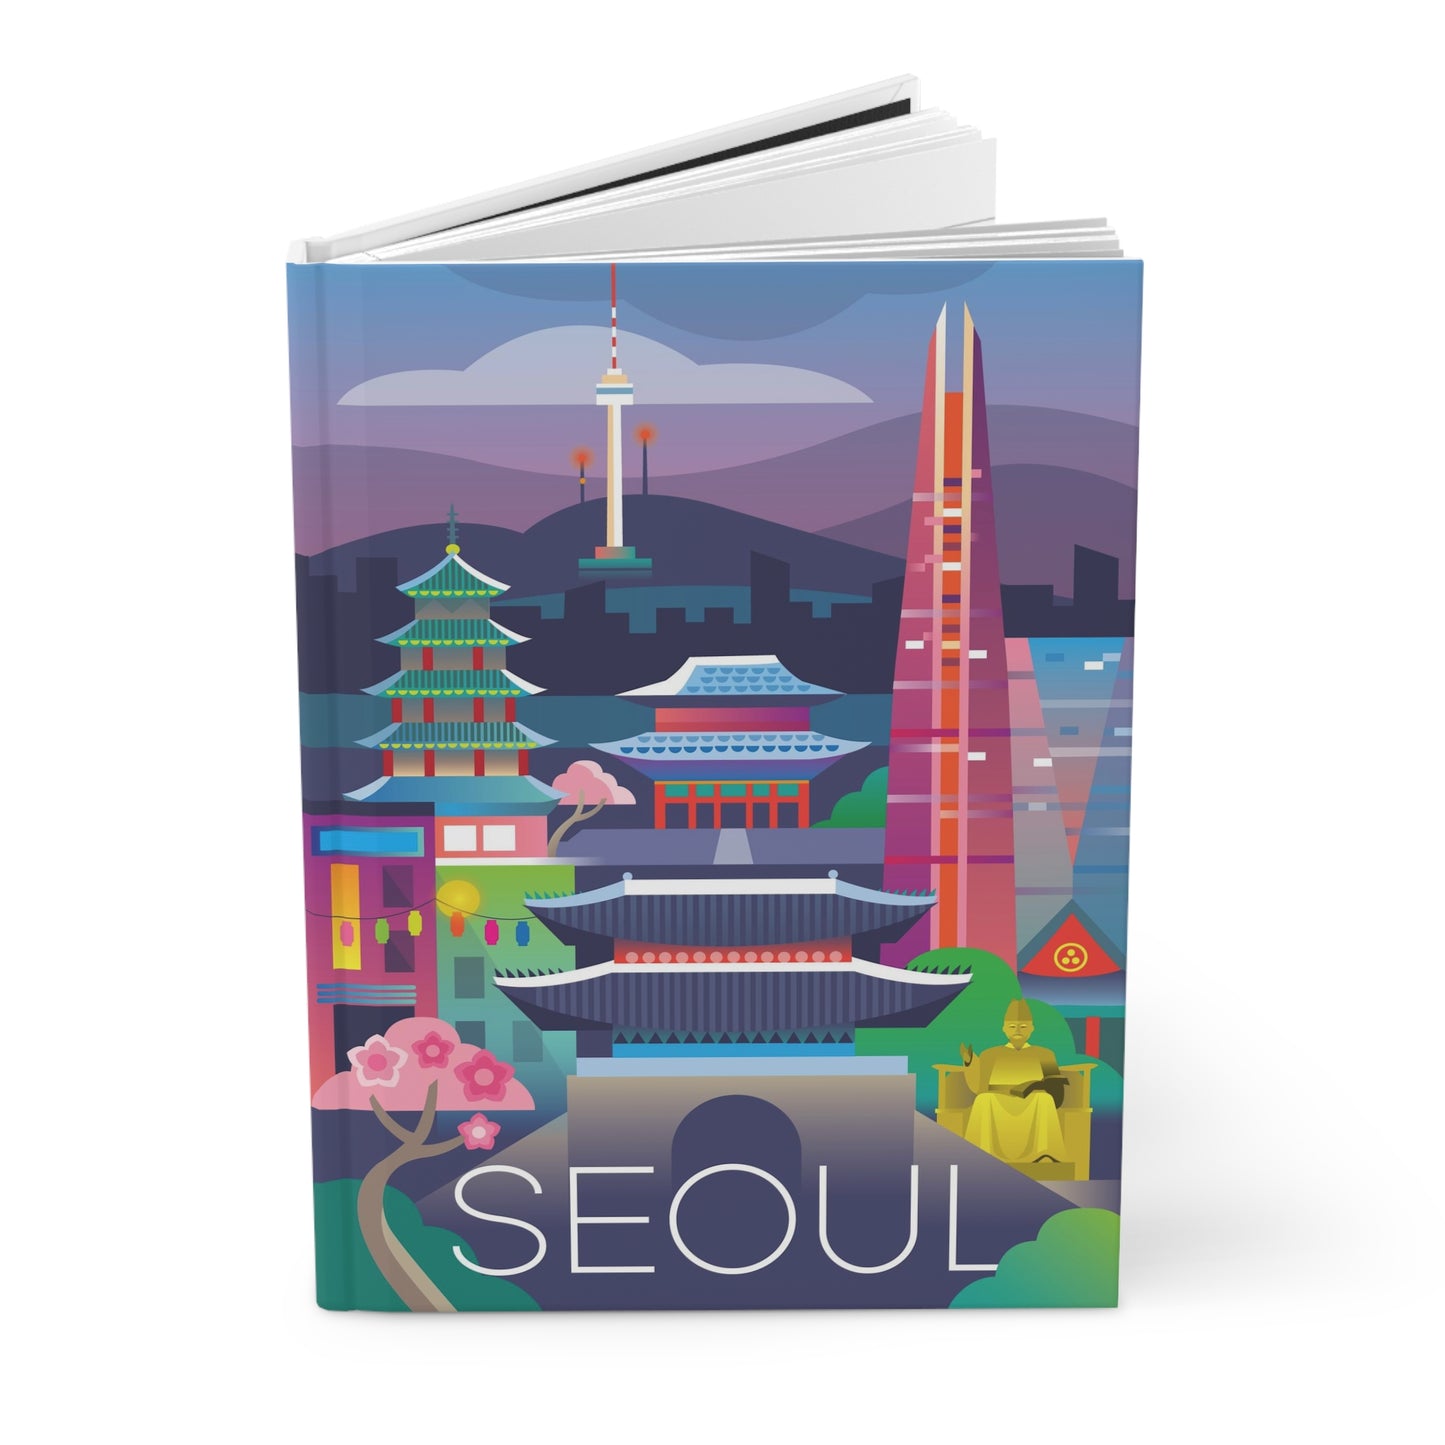 Seoul Hardcover Journal